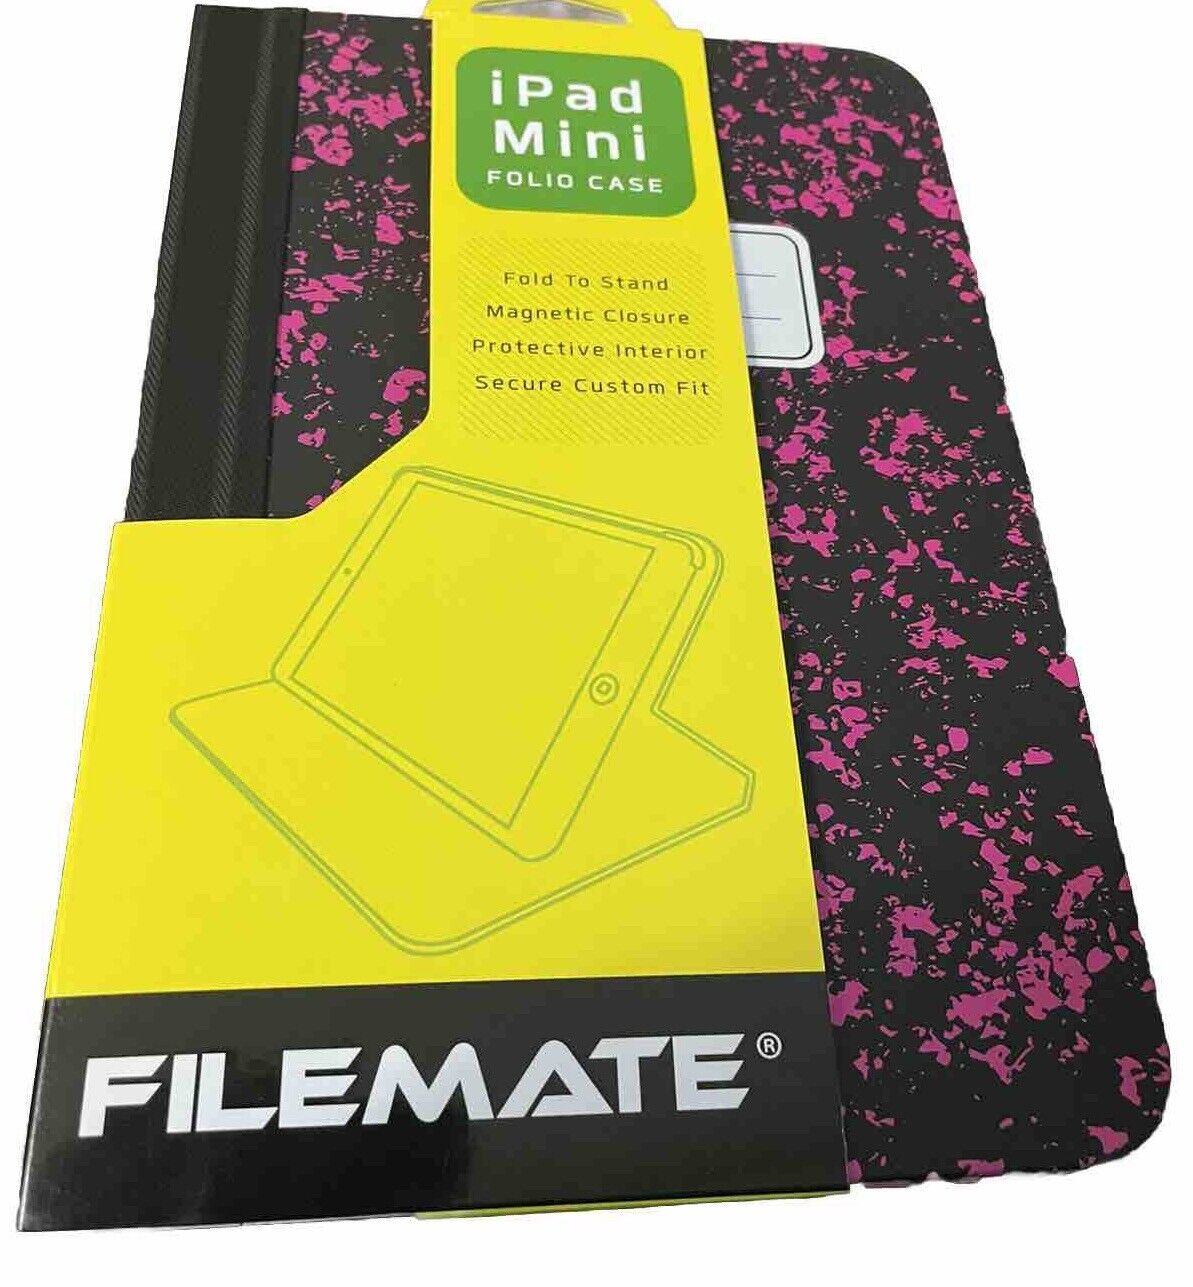 File Mate iPad Mini Folio Case (1100)